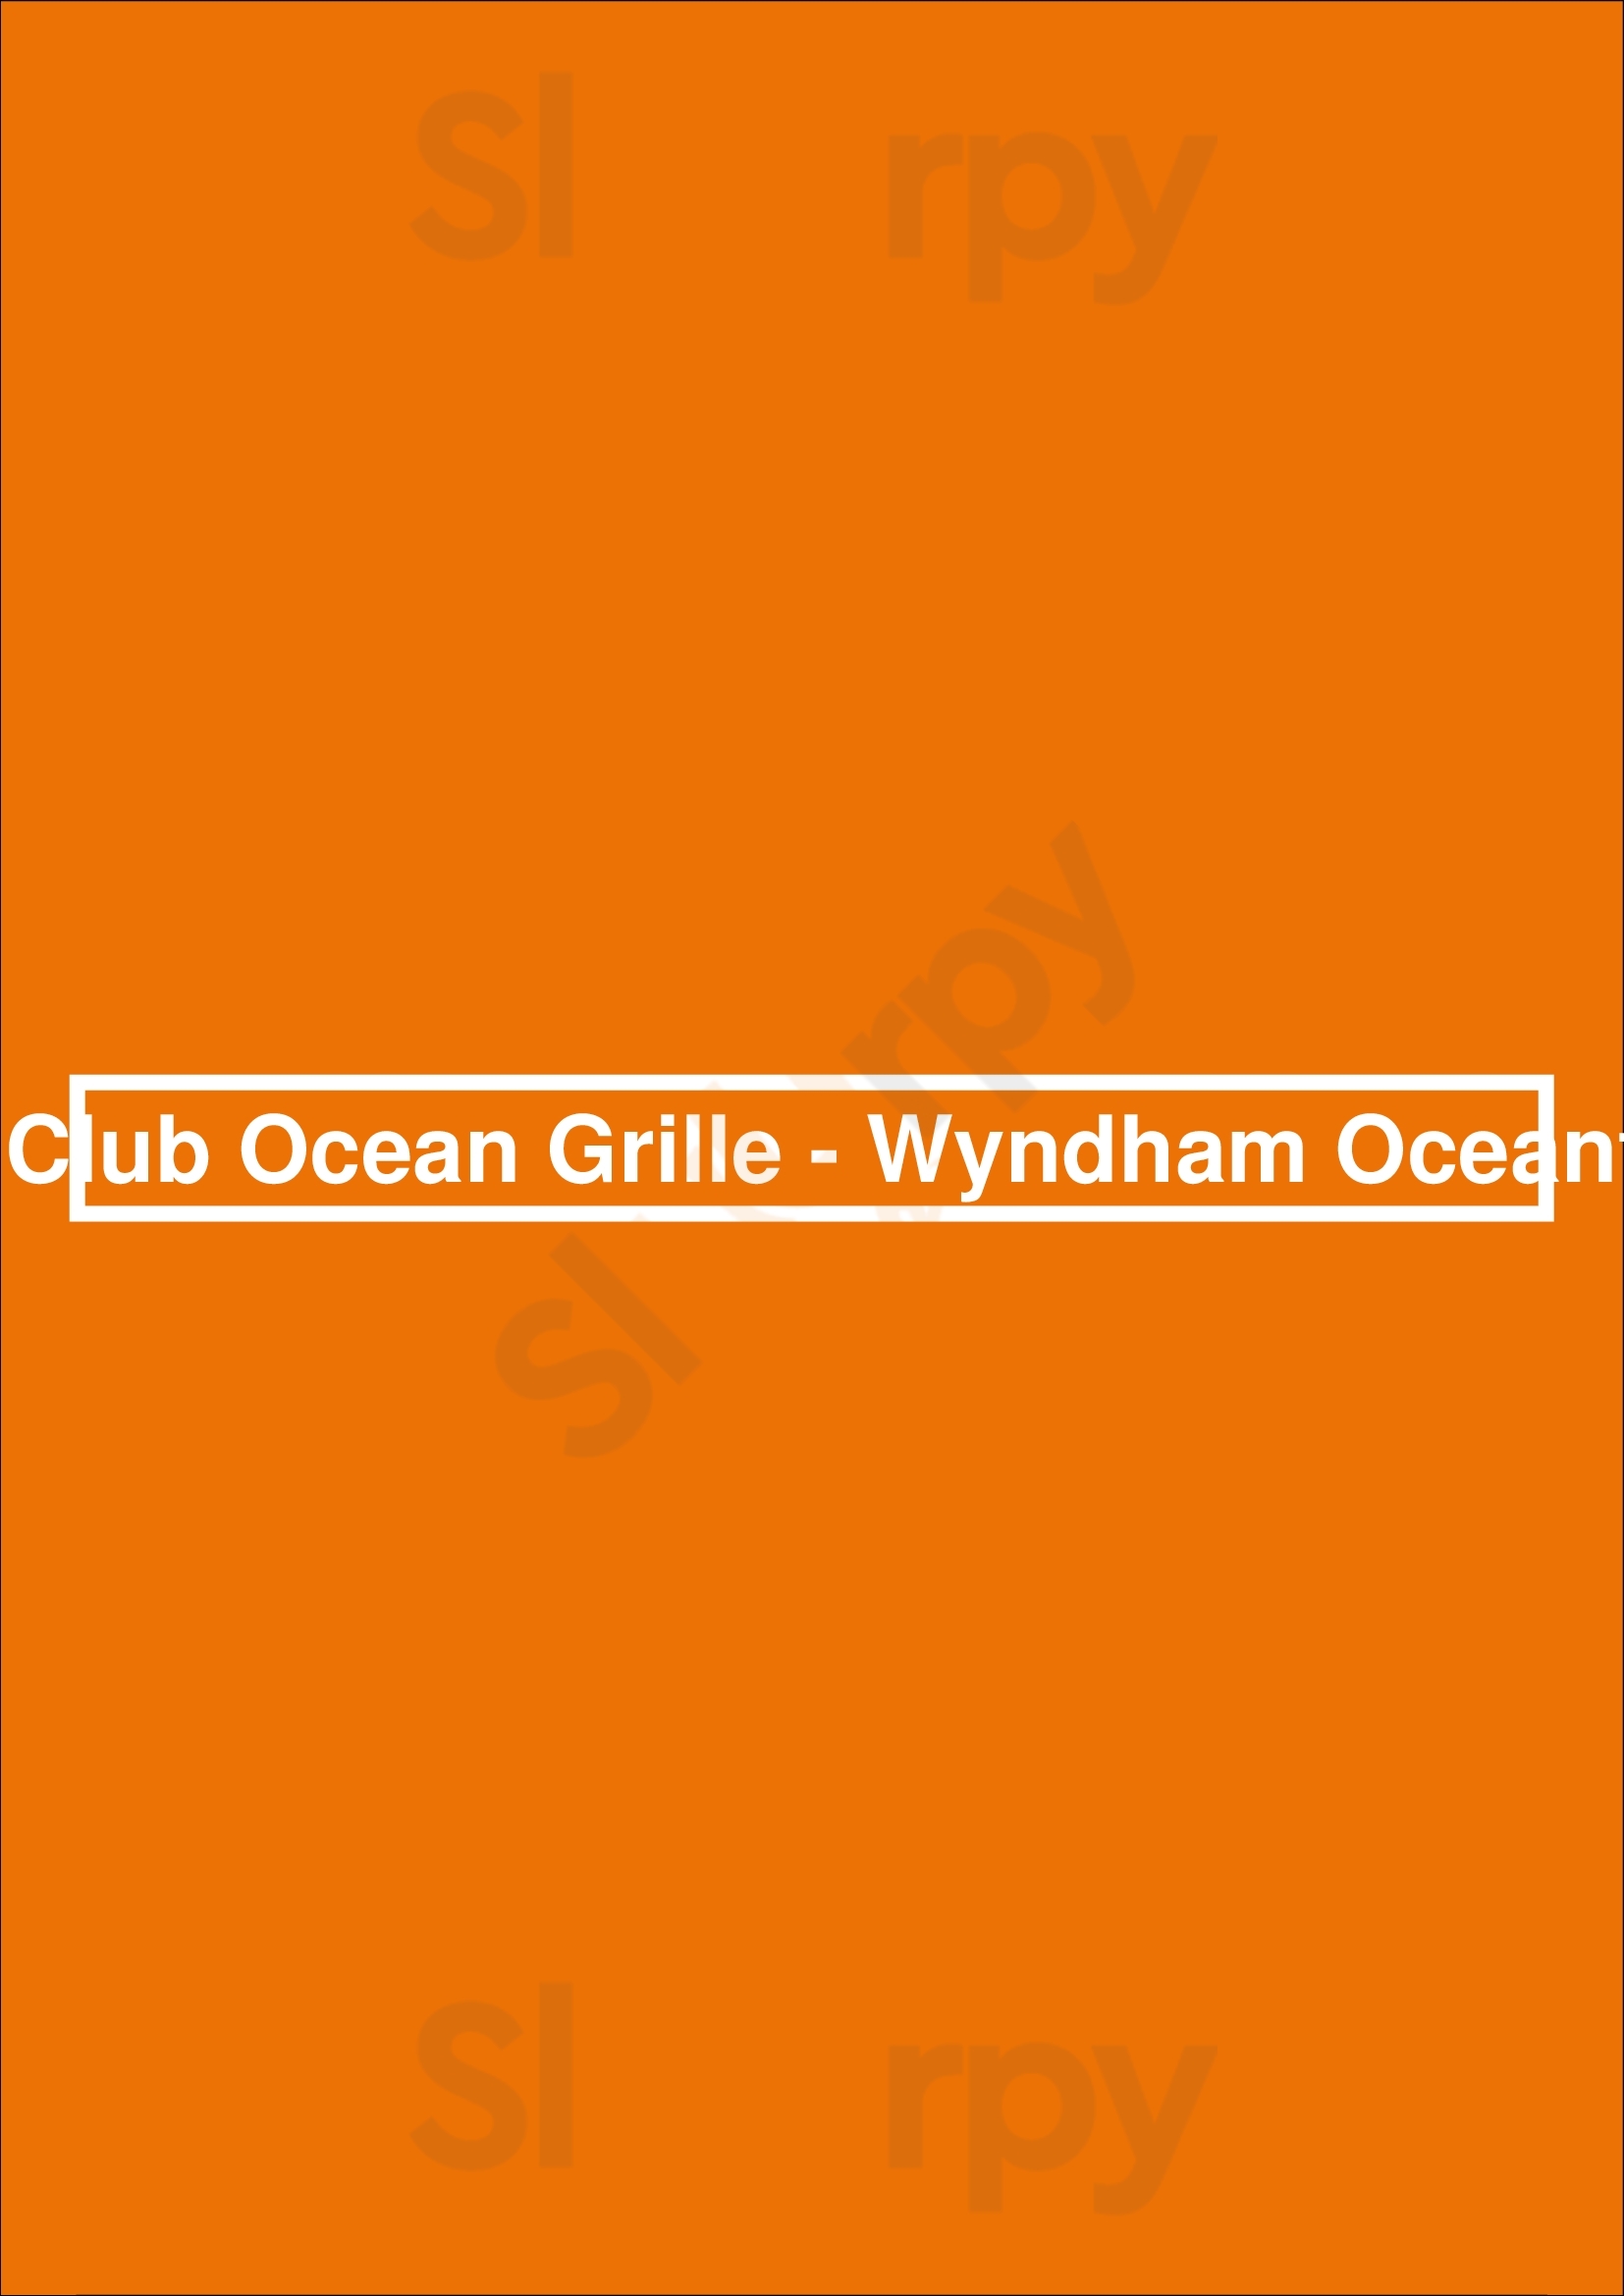 Surf Club Ocean Grille - Wyndham Oceanfront Virginia Beach Menu - 1